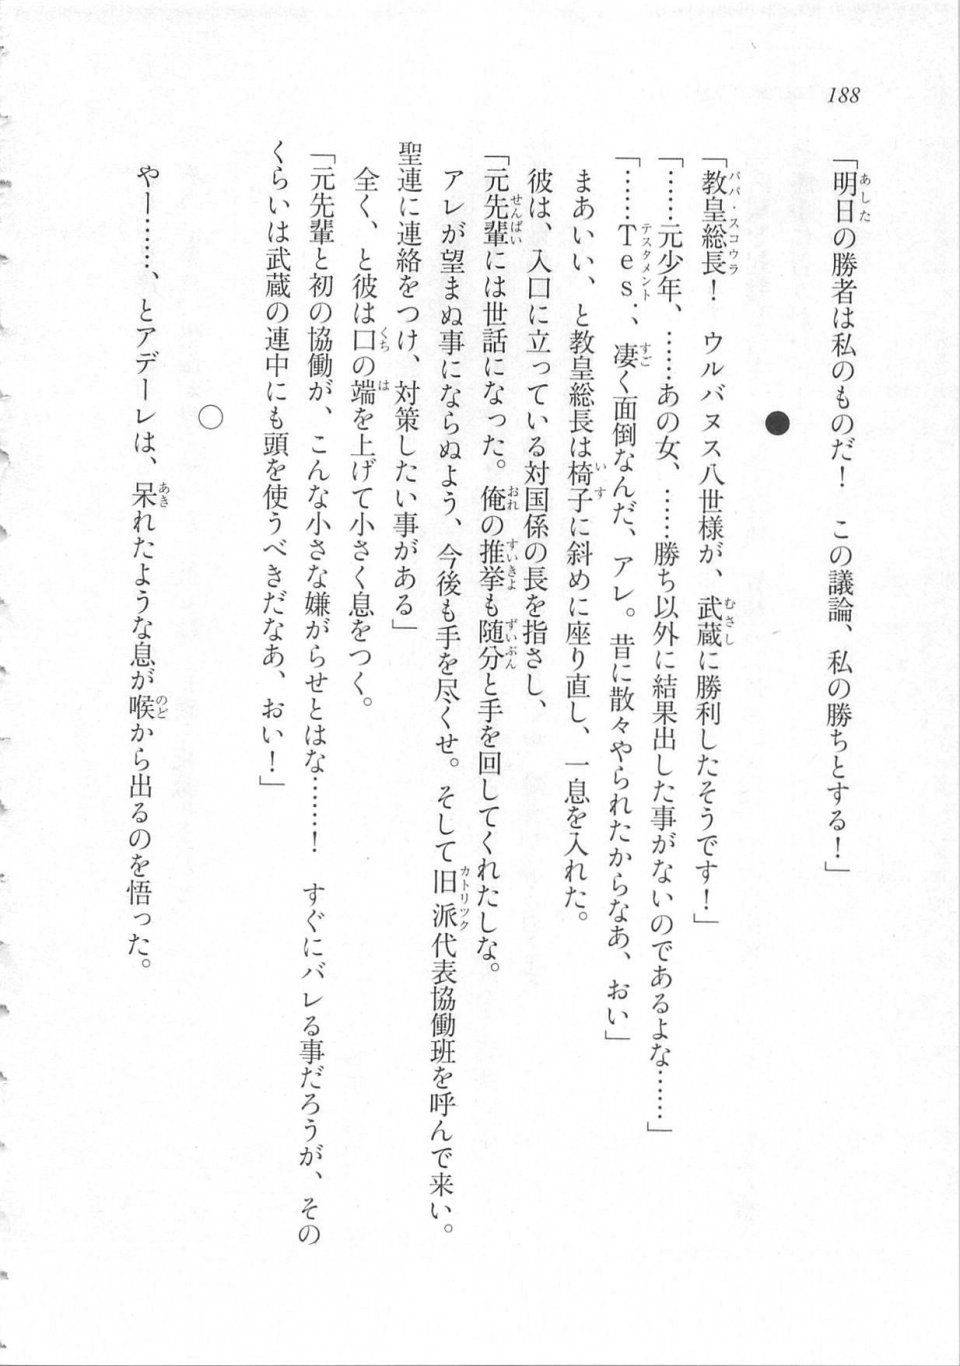 Kyoukai Senjou no Horizon LN Sidestory Vol 3 - Photo #192